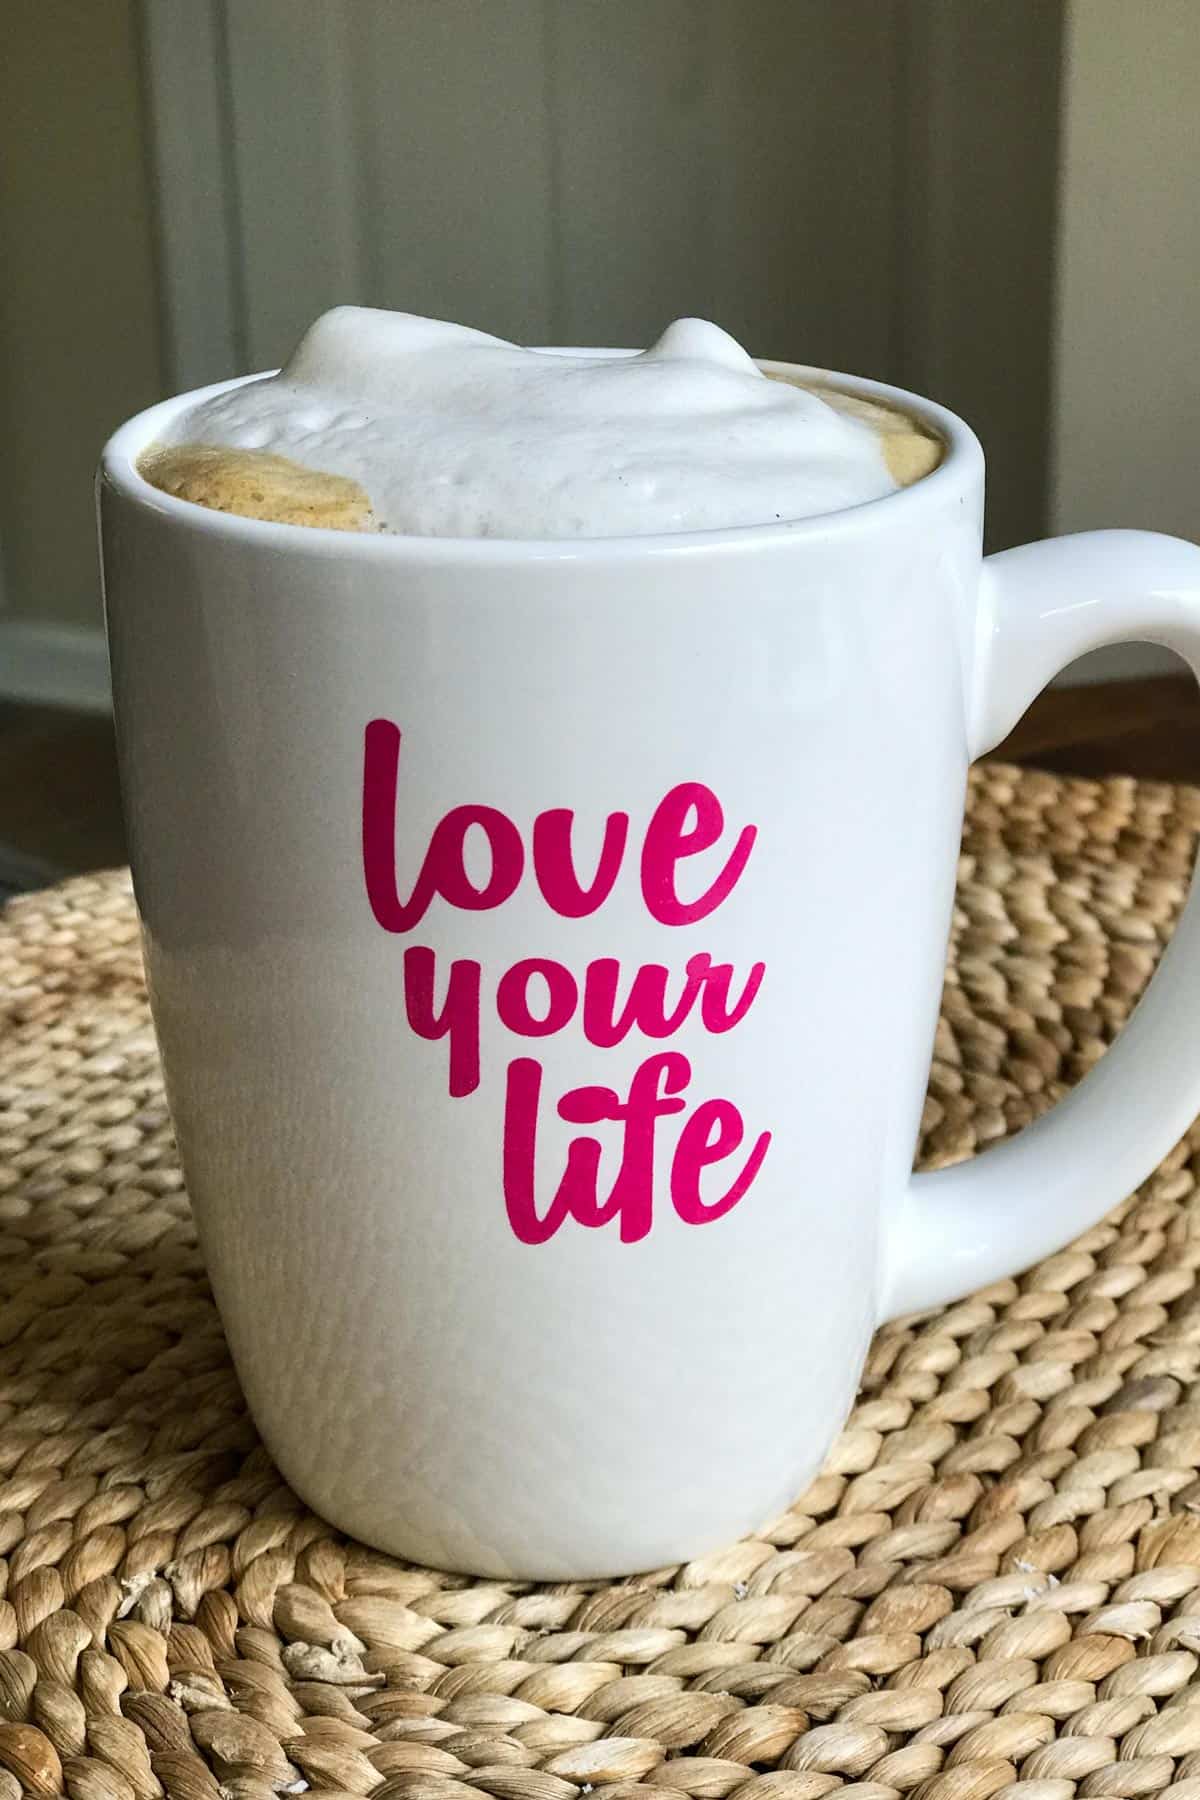 Cappuccino senza lattosio in tazza che dice "Ama la tua vita"